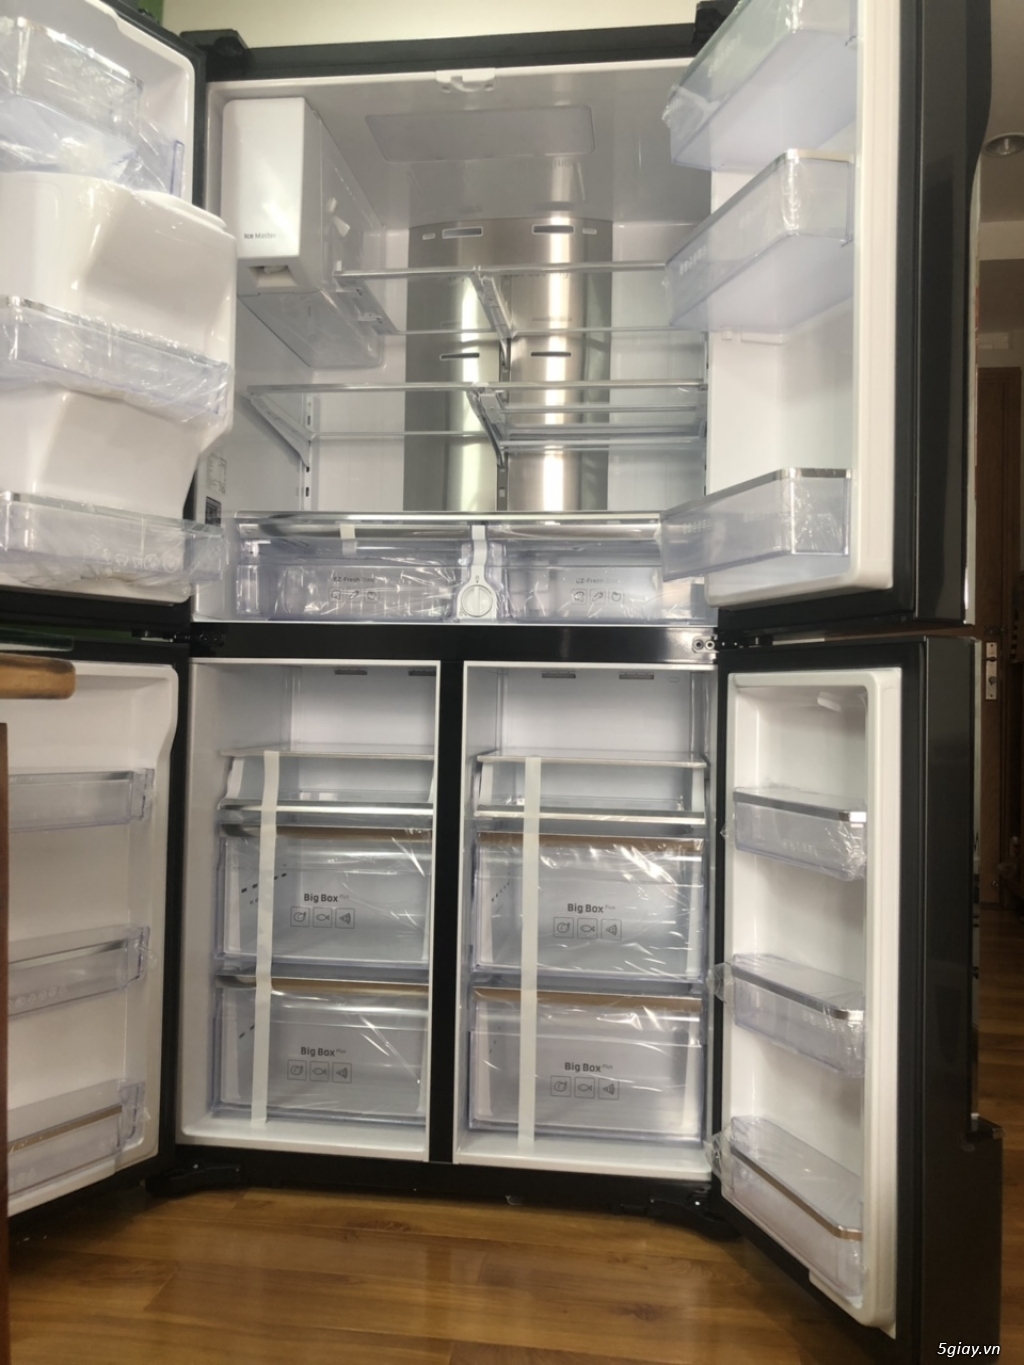 Thanh lý tủ lạnh SamSung Multidoor 644L (RF56K9041SG) - 2